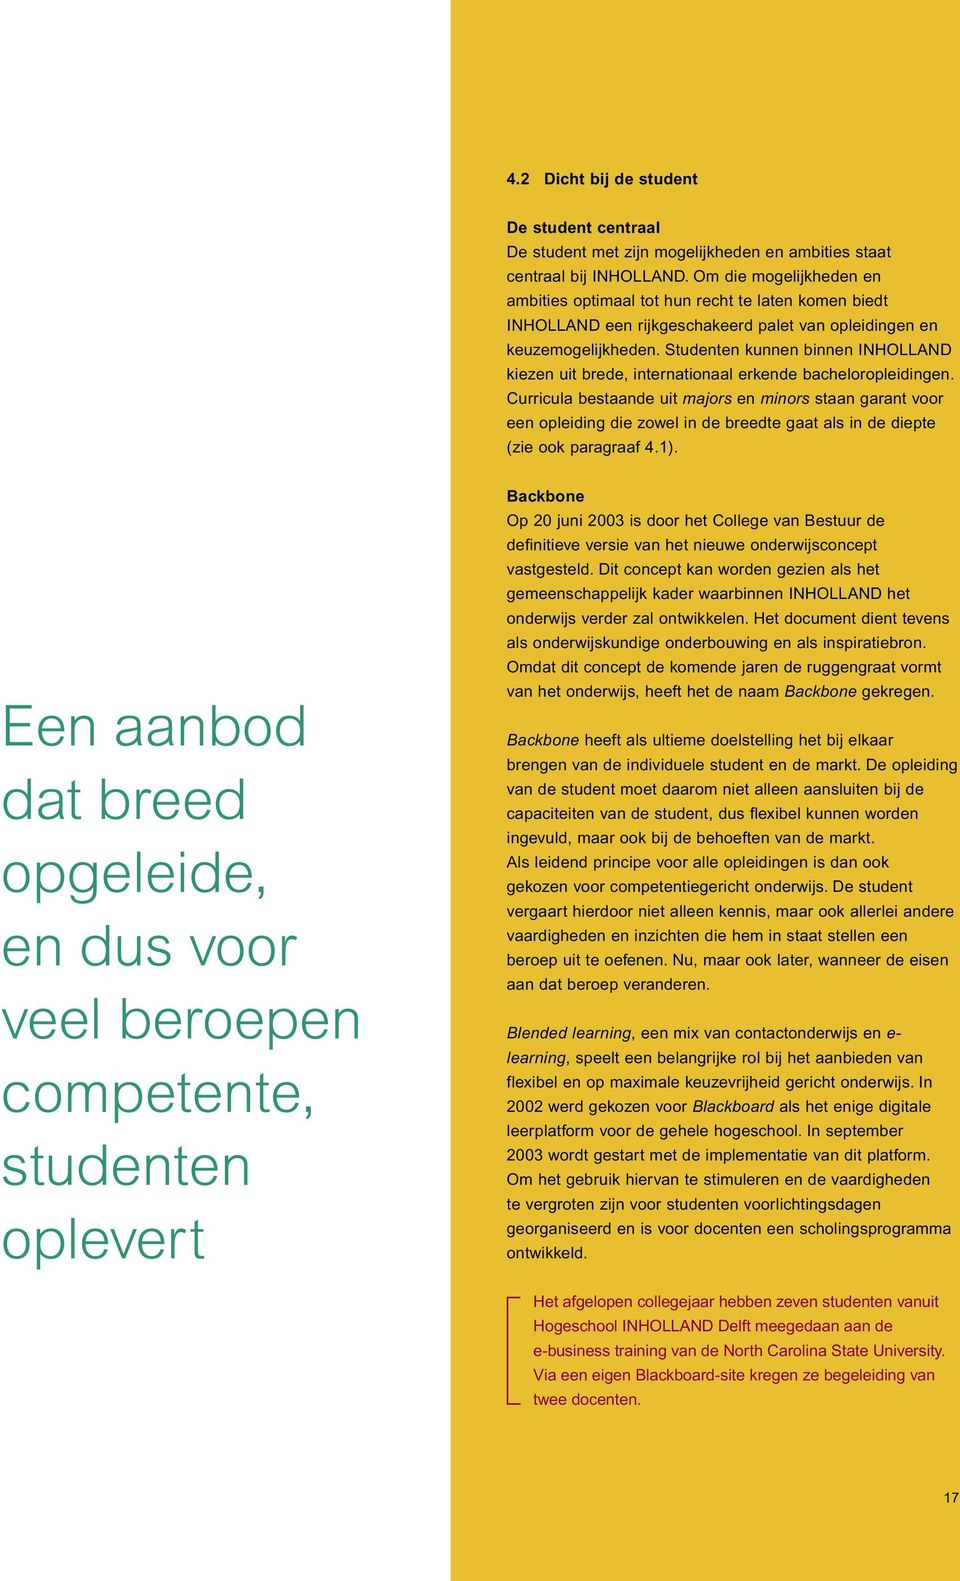 Studenten kunnen binnen INHOLLAND kiezen uit brede, internationaal erkende bacheloropleidingen.